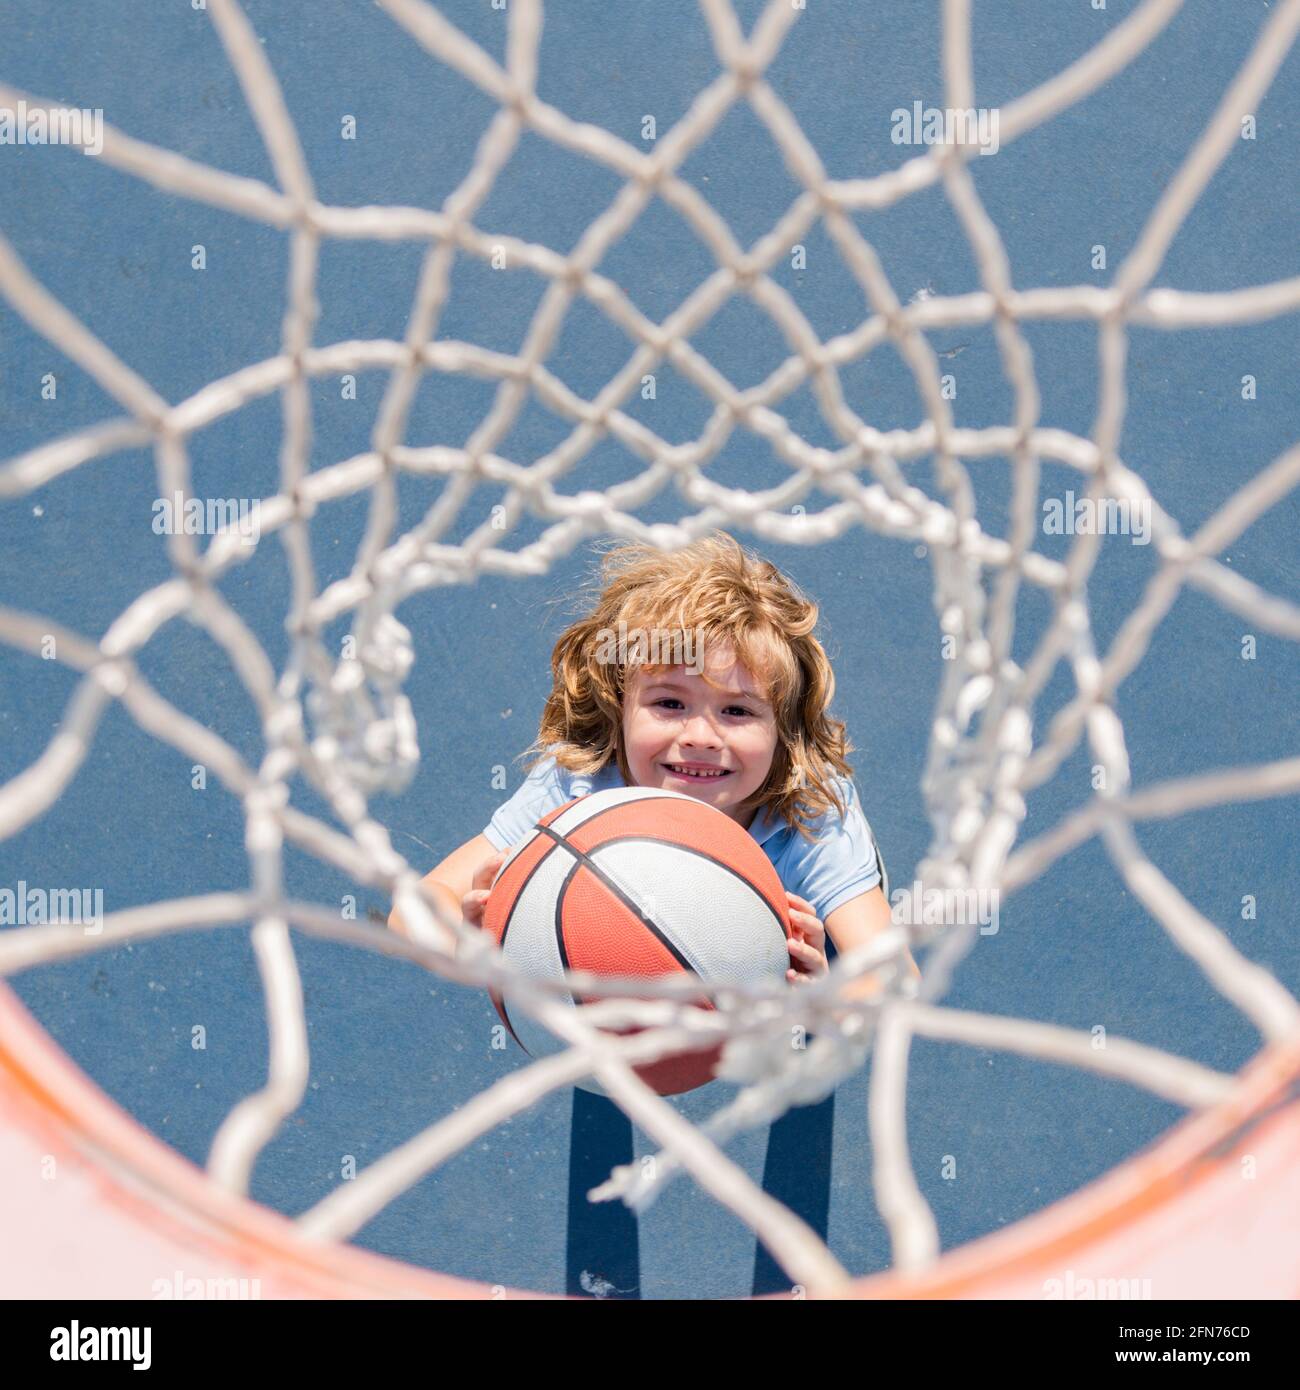 Vue de dessus de l'enfant mignon joue au basket-ball. Enfants actifs qui jouent en plein air avec un ballon de basket-ball. Banque D'Images